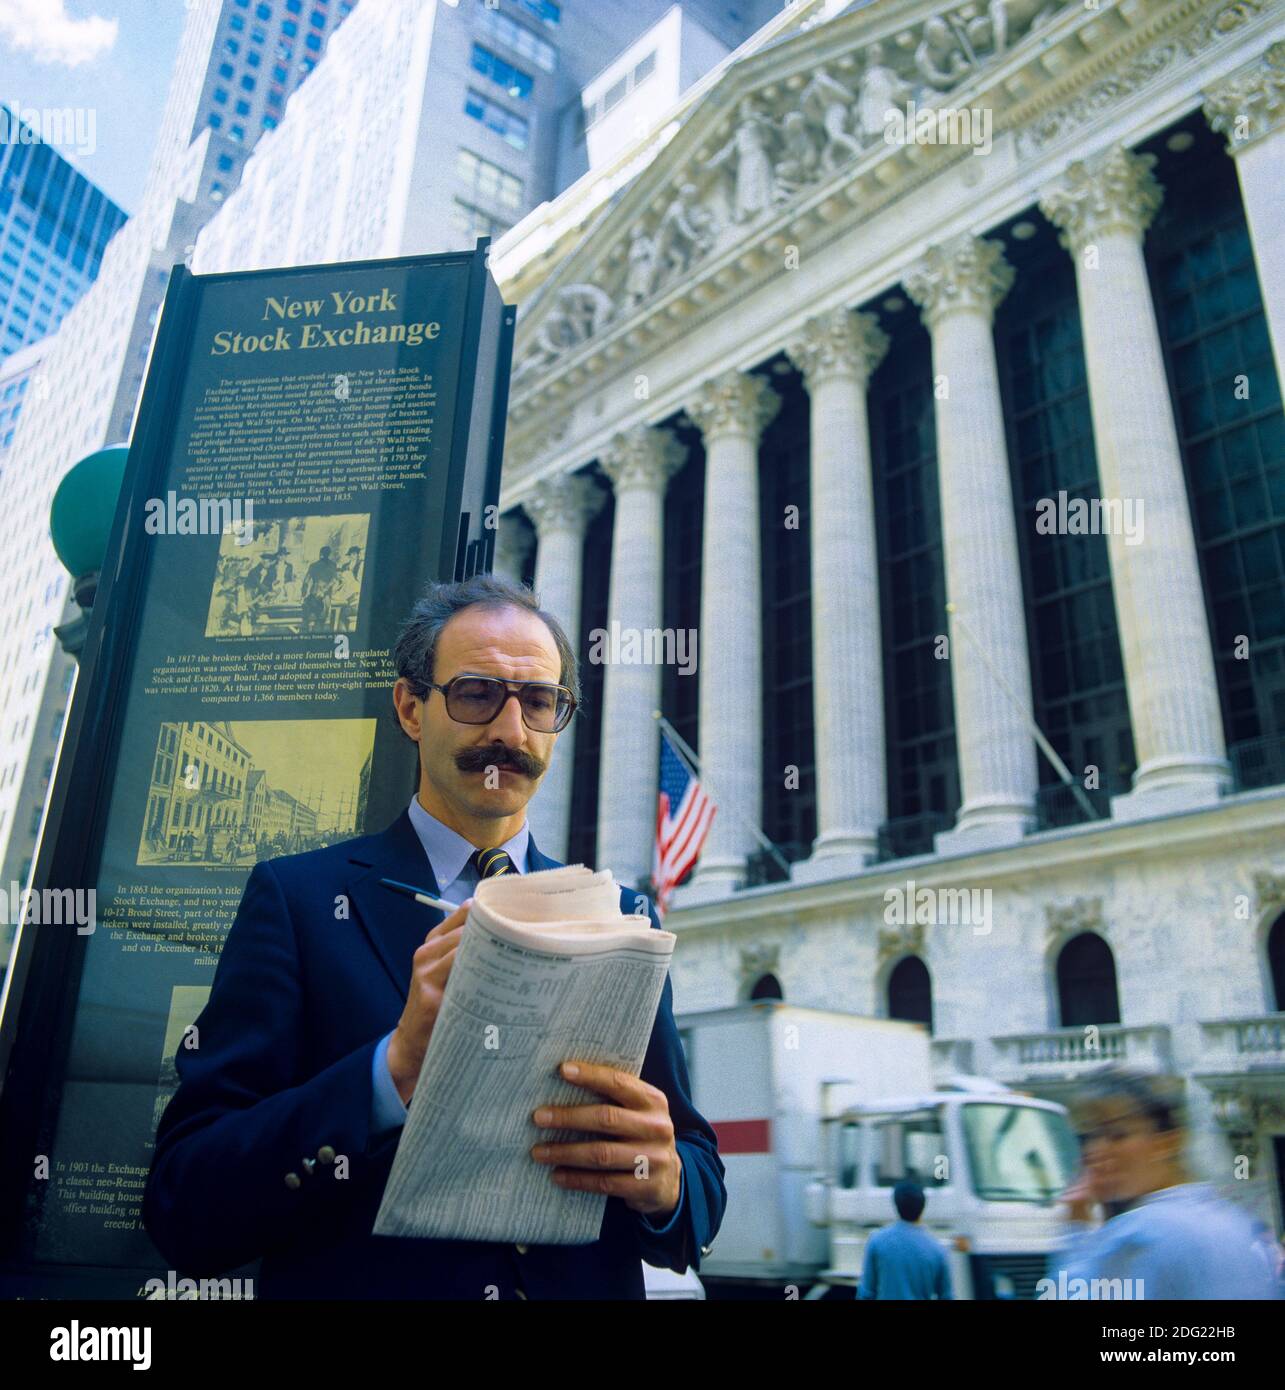 New York 1985, uomo che controlla i prezzi delle azioni nel Wall Street Journal, NYSE Stock Exchange Building Facade, Broad Street, Manhattan, New York City, NY, NYC, STATI UNITI, Foto Stock